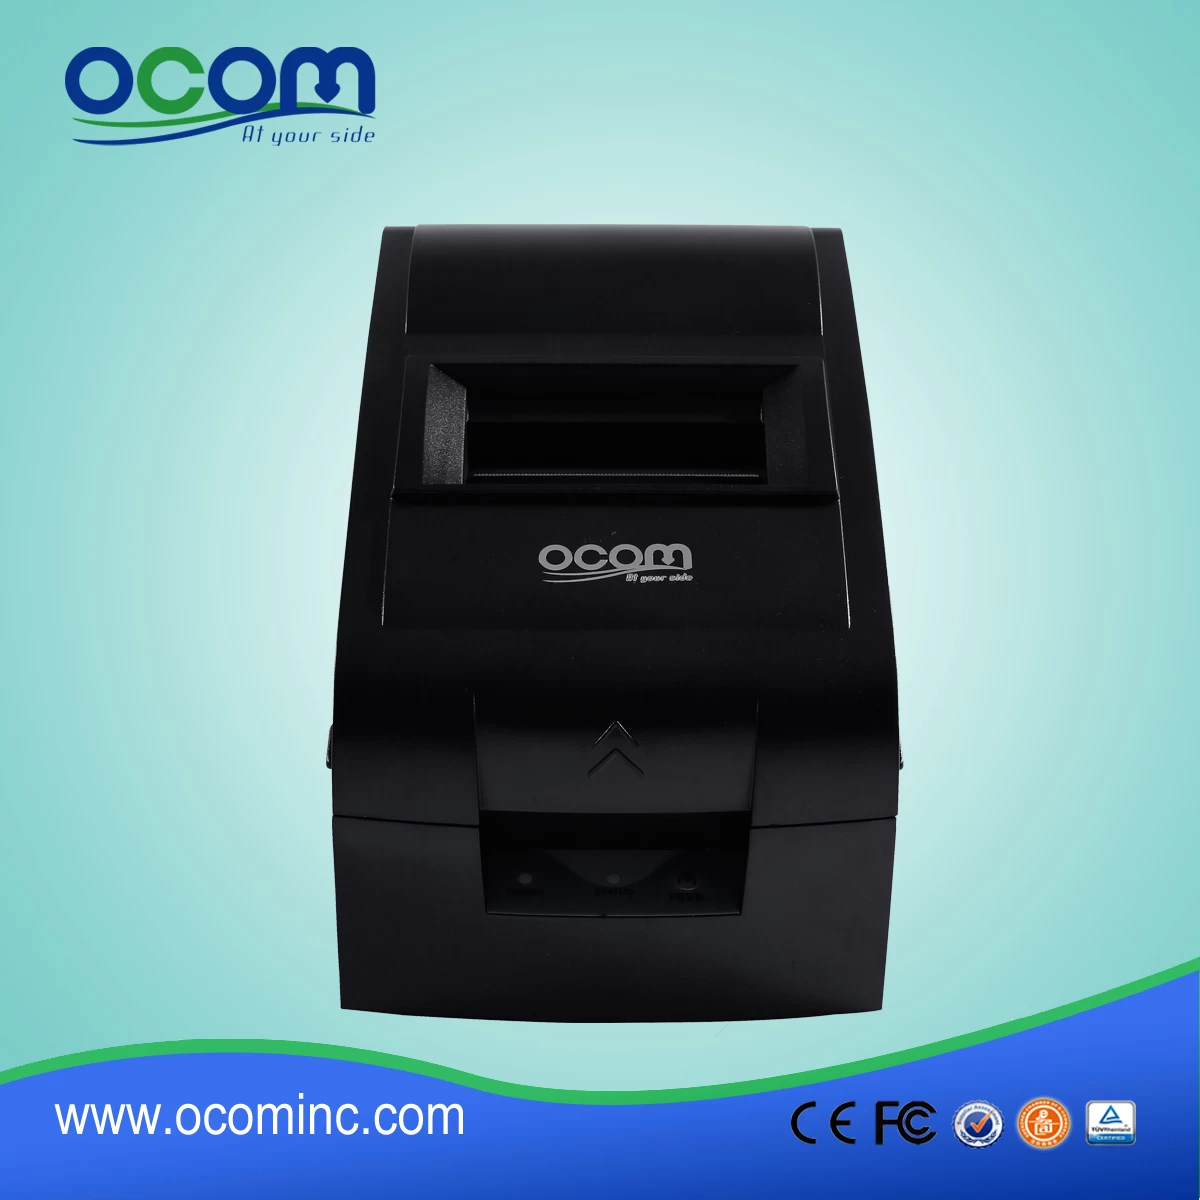 (OCPP-762) 76mm Impact Dot Matrix Receipt Printer With Manual-cutter